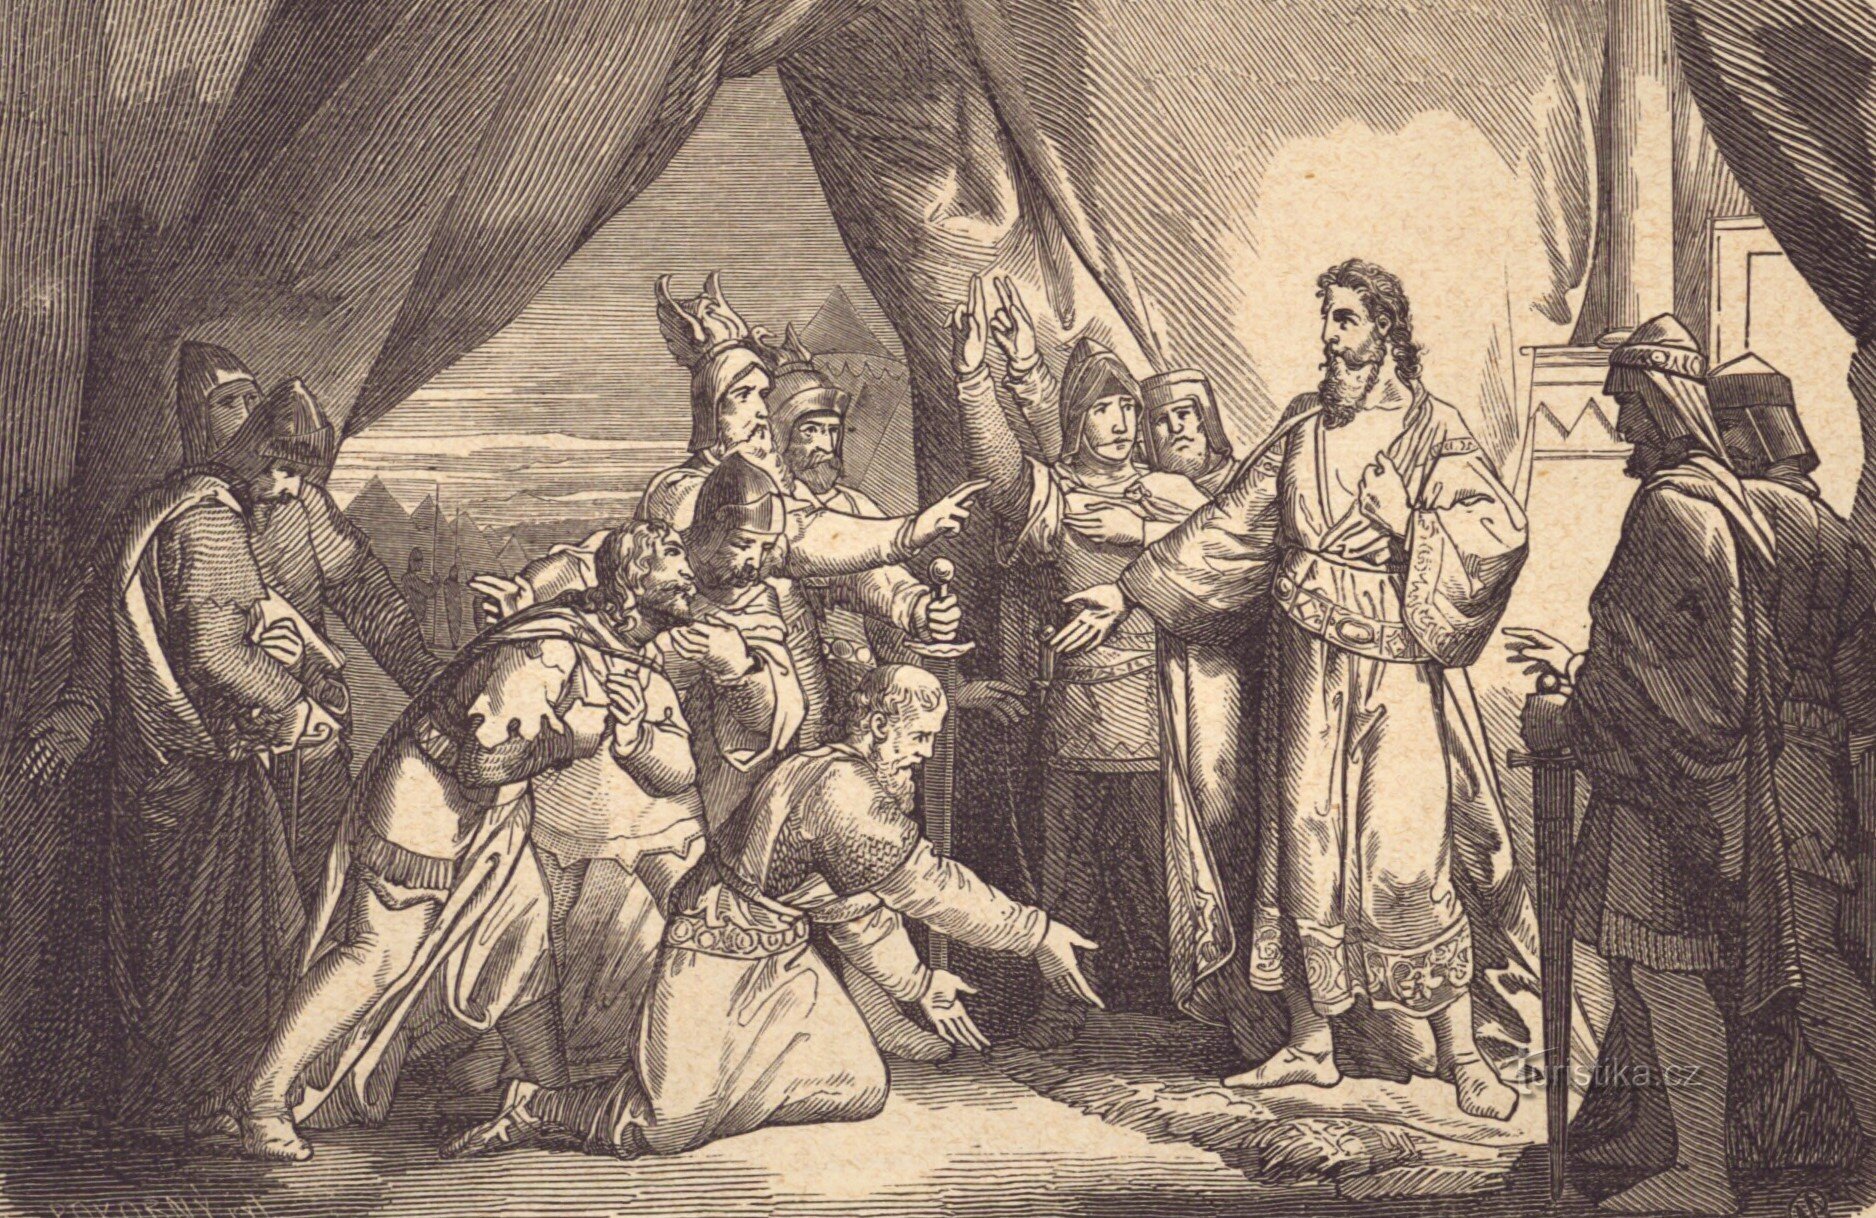 Kralj Přemysl Otakar II. pred usodno bitko na Maixnerjevi risbi